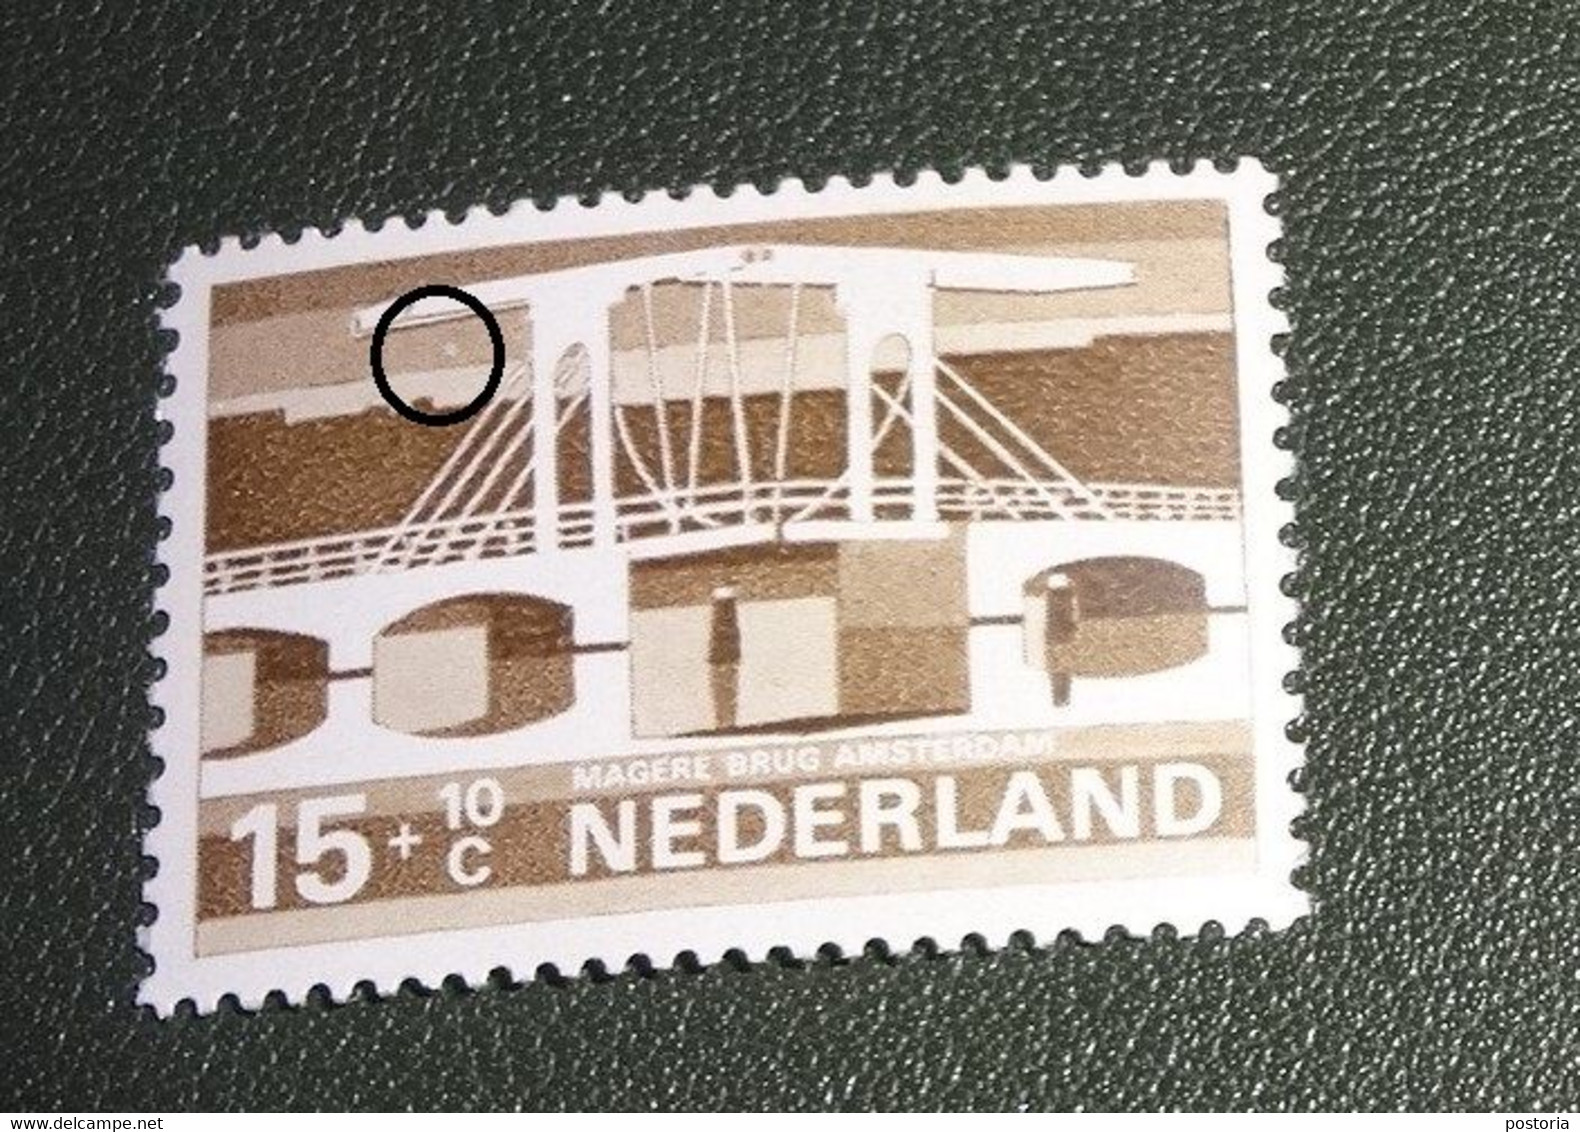 Nederland - MAST - 902 PM - 1968 - Plaatfout - Postfris - Wit Vlekje Onder Ophaalgewicht - Varietà & Curiosità